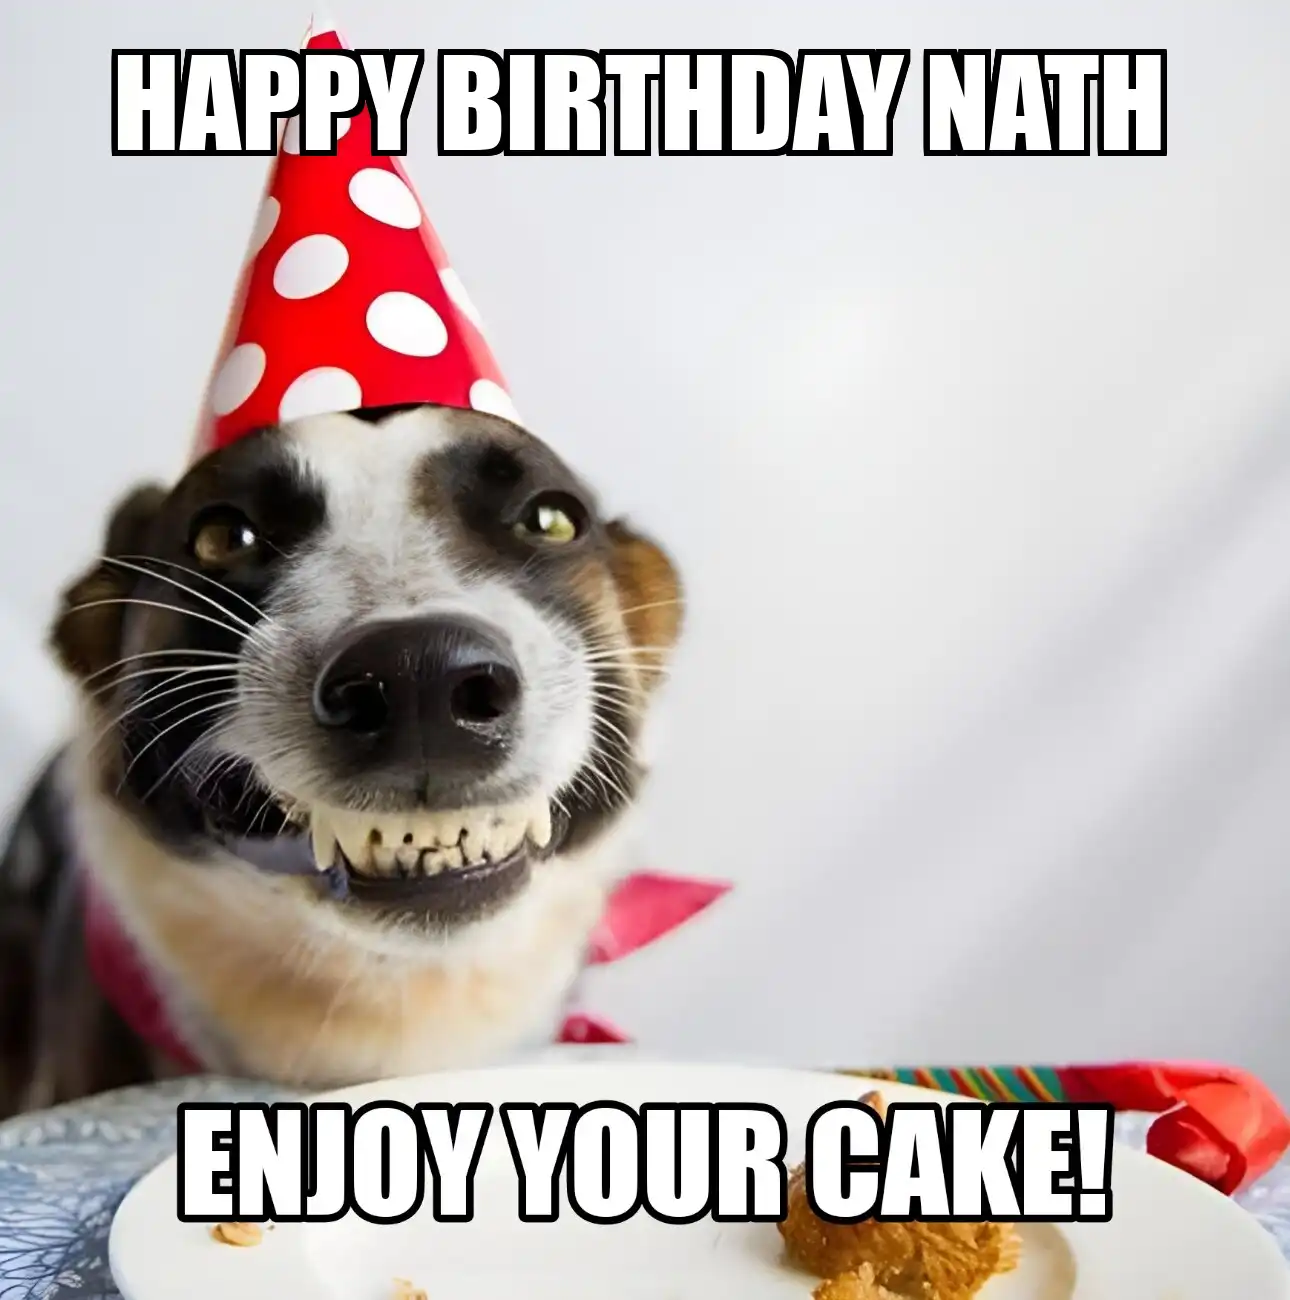 Happy Birthday Nath Enjoy Your Cake Dog Meme